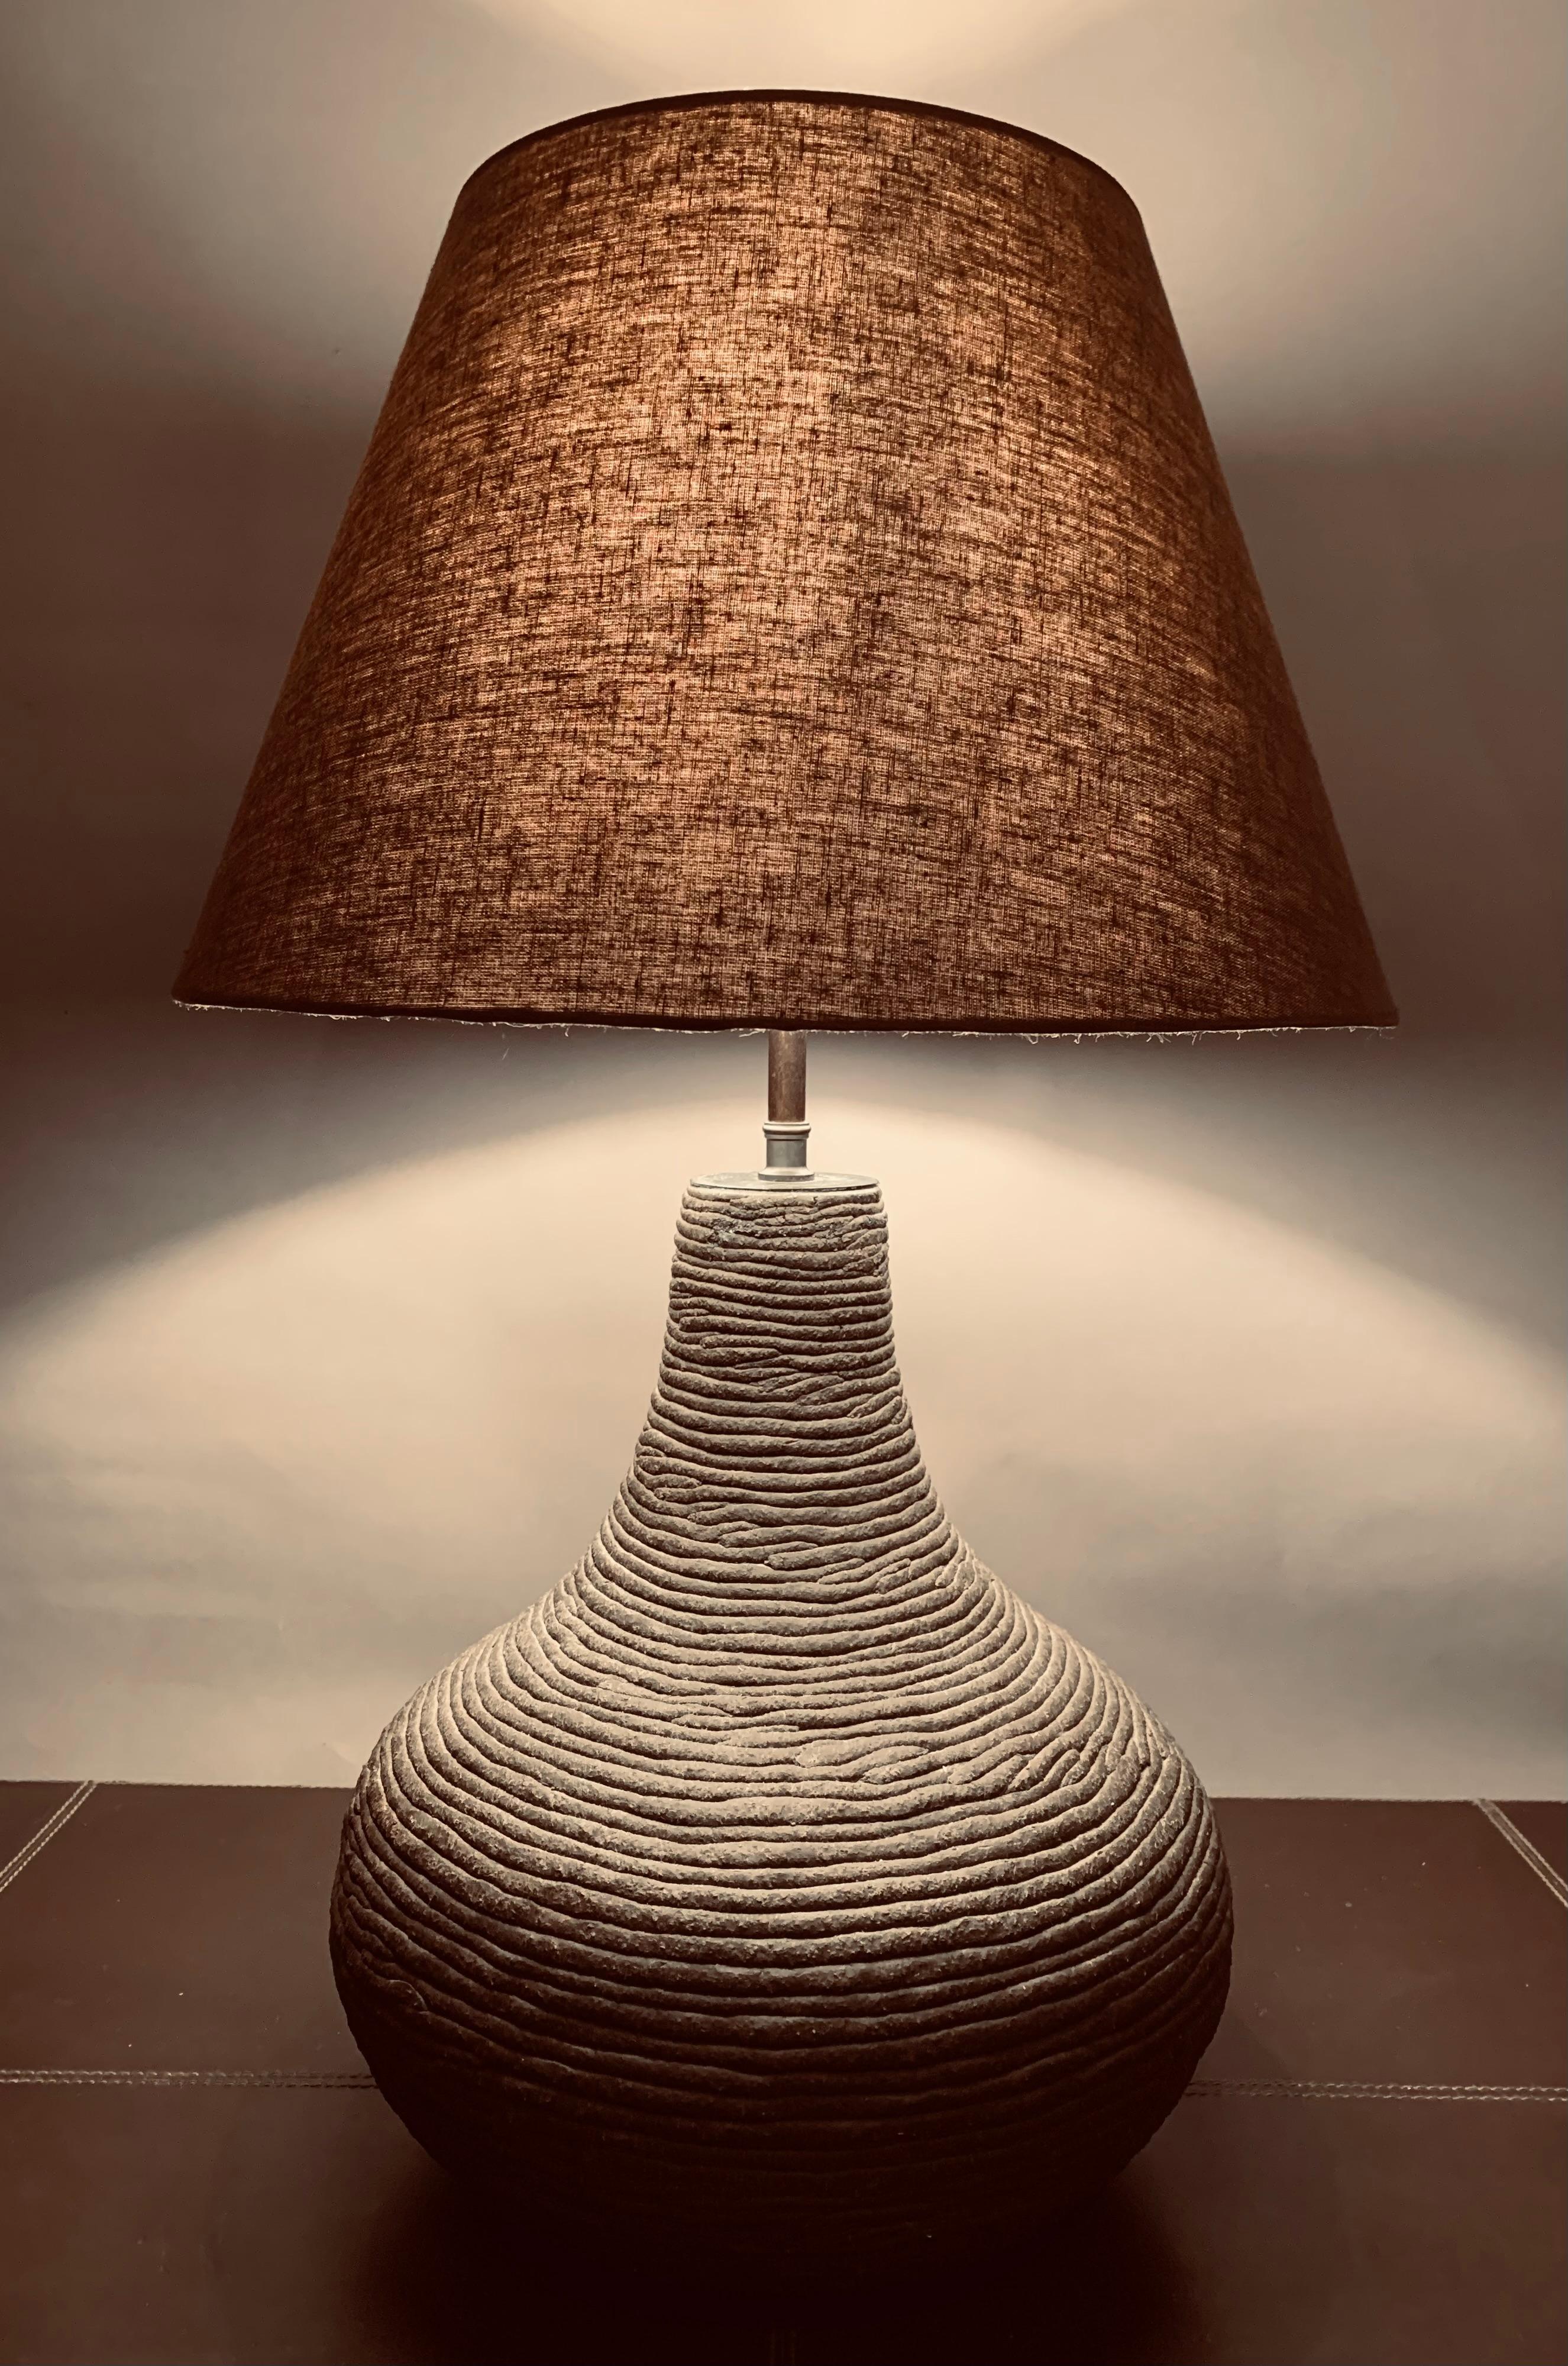 Lampe de table en poterie marron chocolat mat fabriquée à la main en Allemagne dans les années 1970. La lampe de table est construite de manière intéressante à partir d'argile très fine enroulée dans une lampe de forme bulbeuse, cuite et